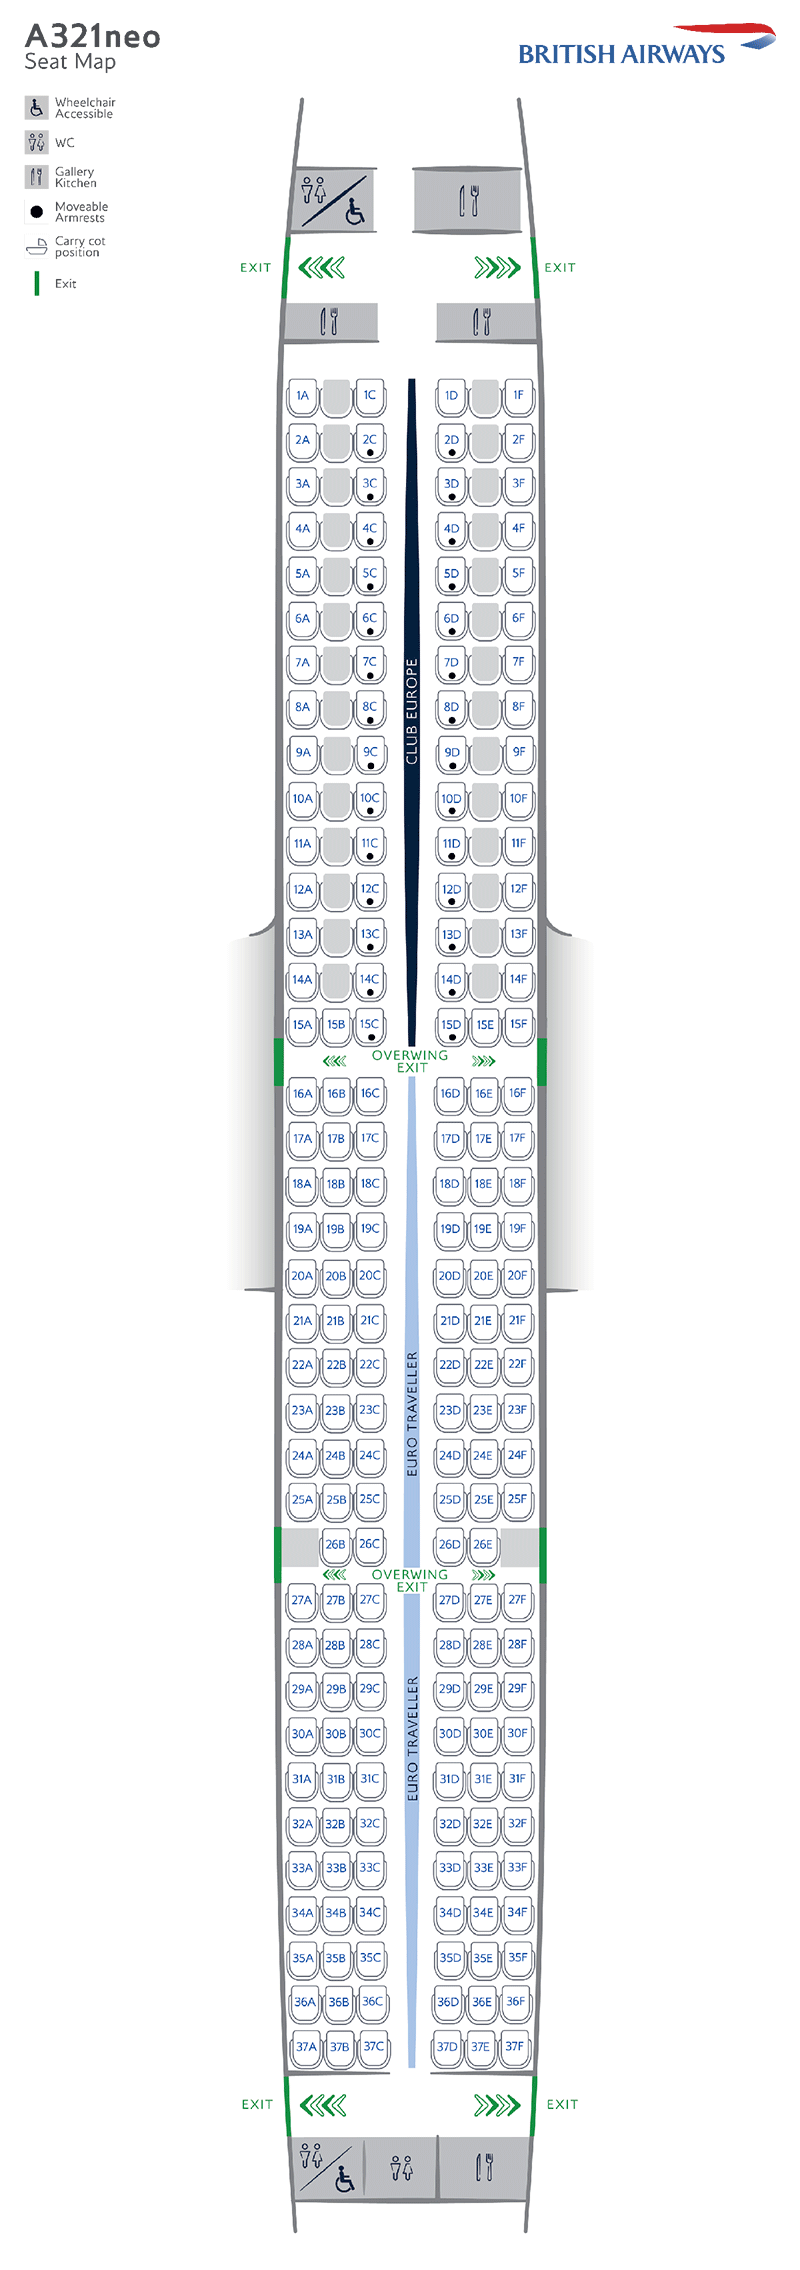 Mapa de asientos del A321